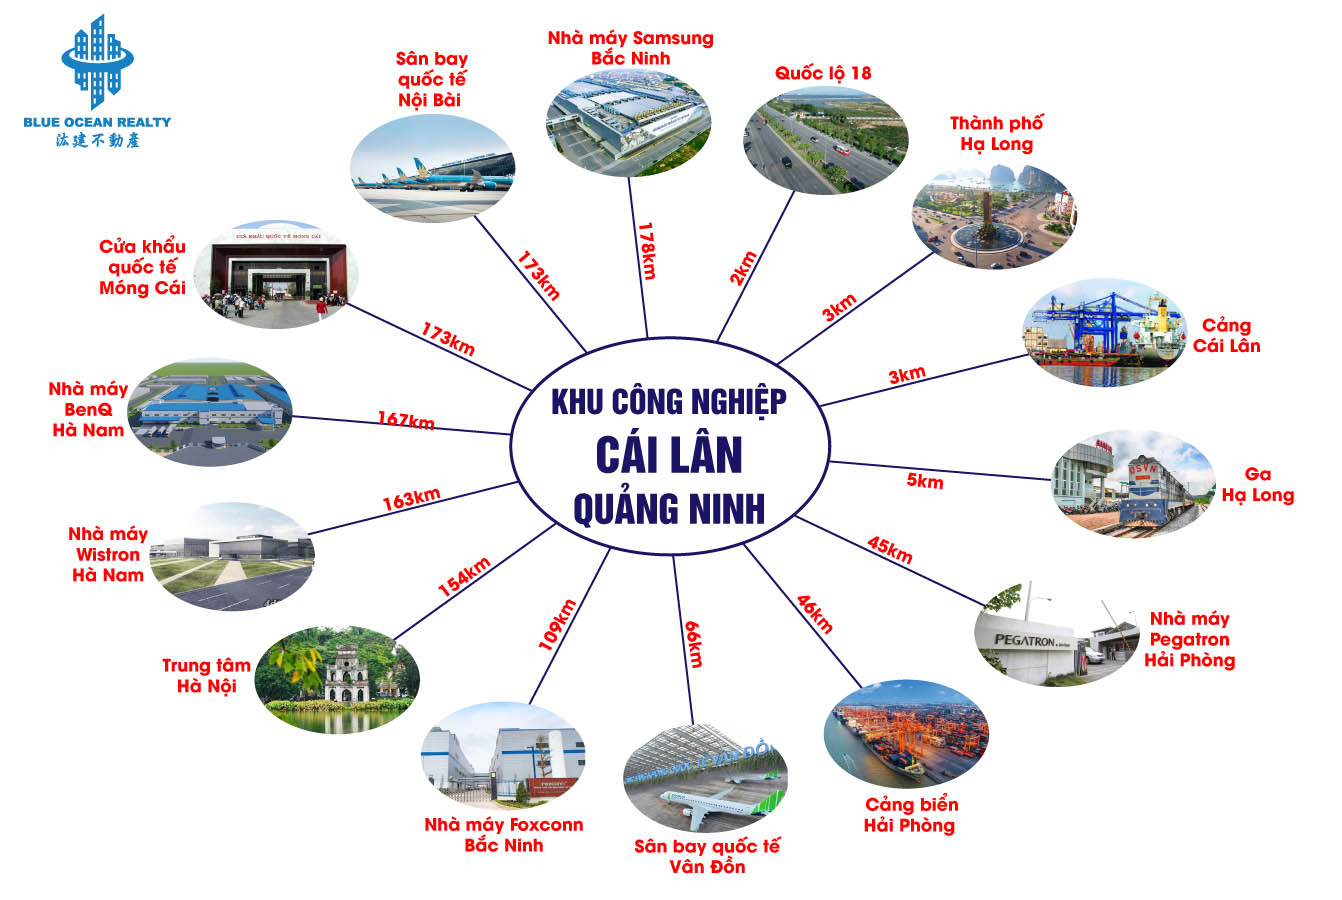 Khu công nghiệp (KCN) Cái Lân - Quảng Ninh